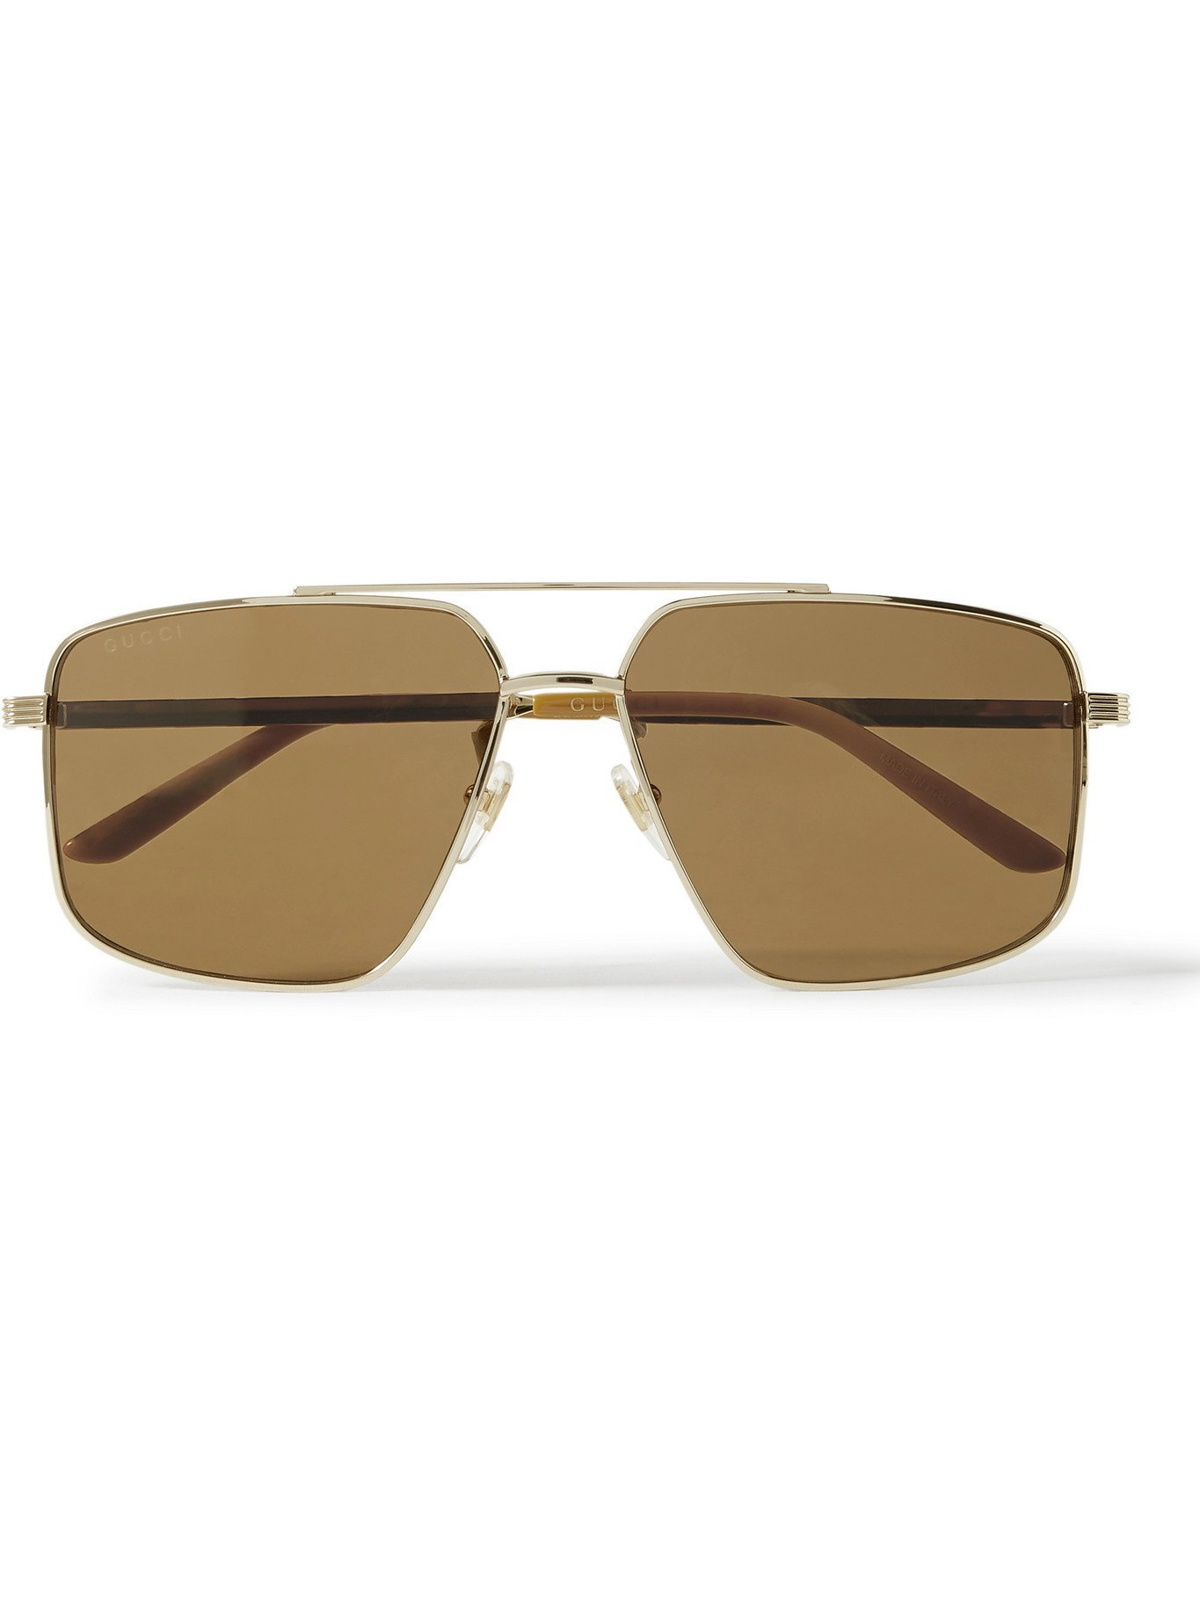 - Aviator-Style Gold-Tone Sunglasses - Gucci